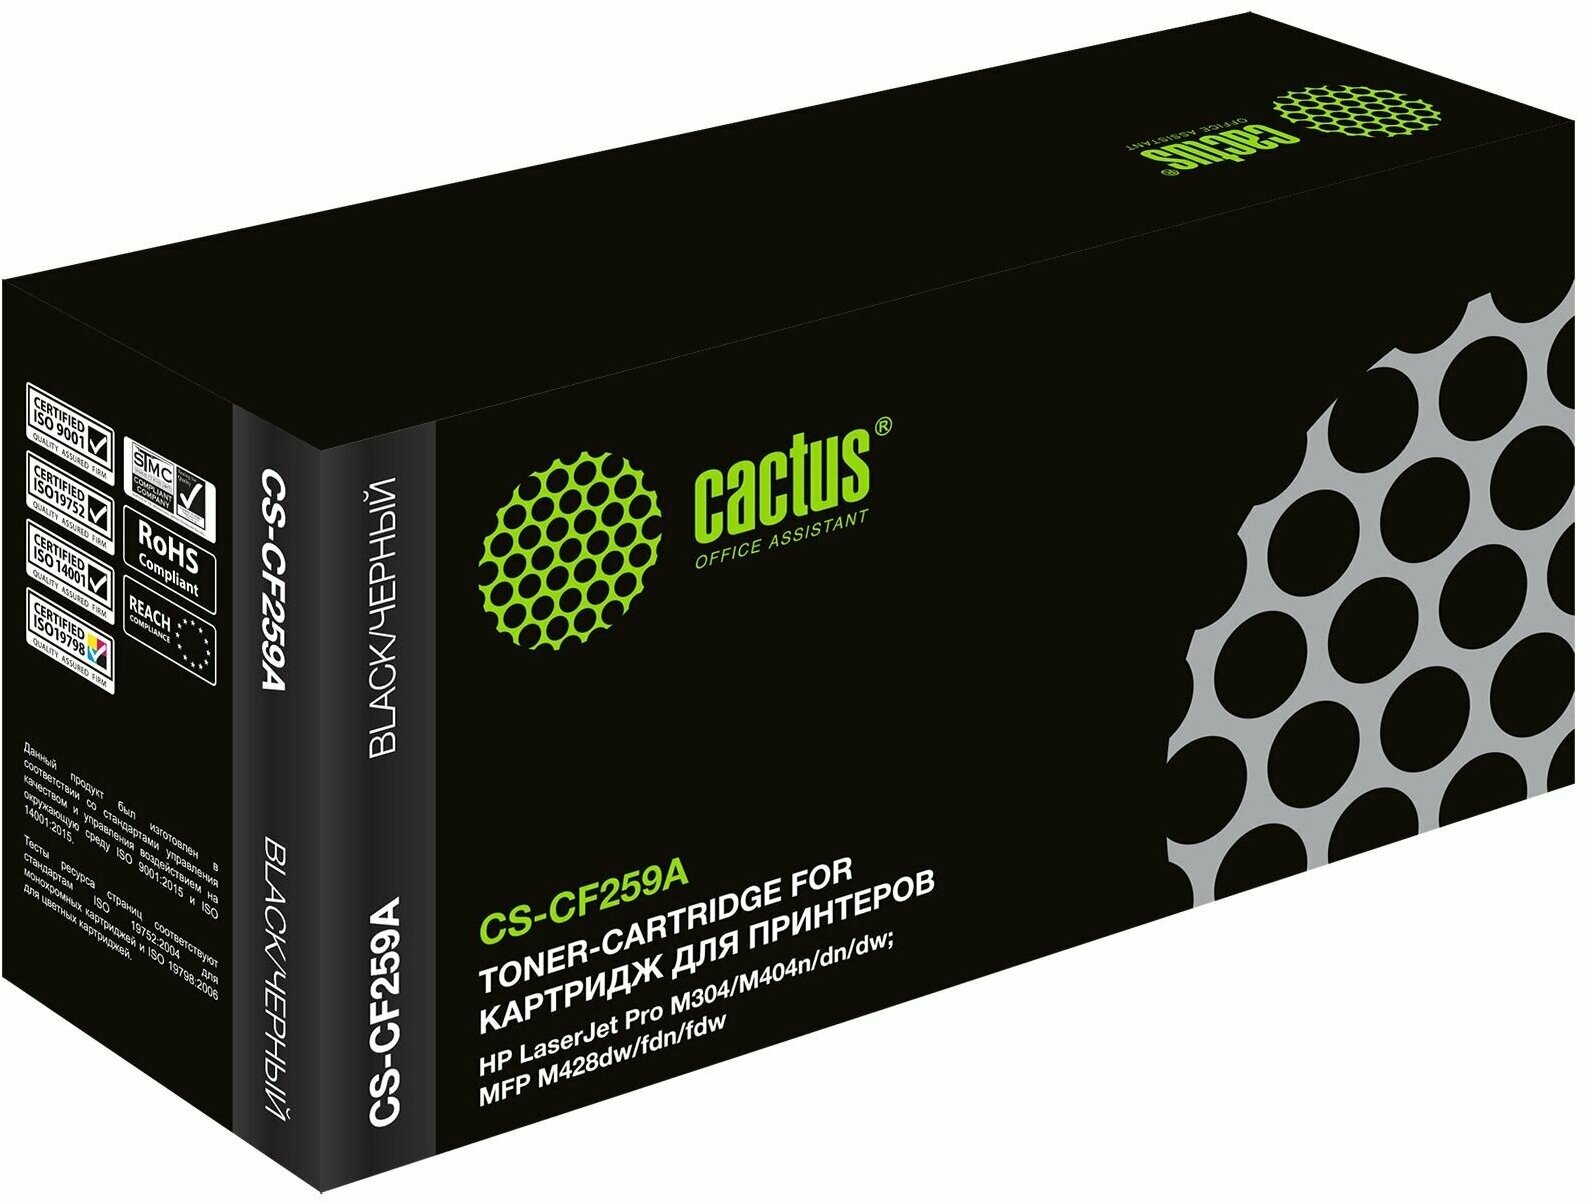 Картридж для лазерного принтера CACTUS CSP-CF259A Black, совместимый